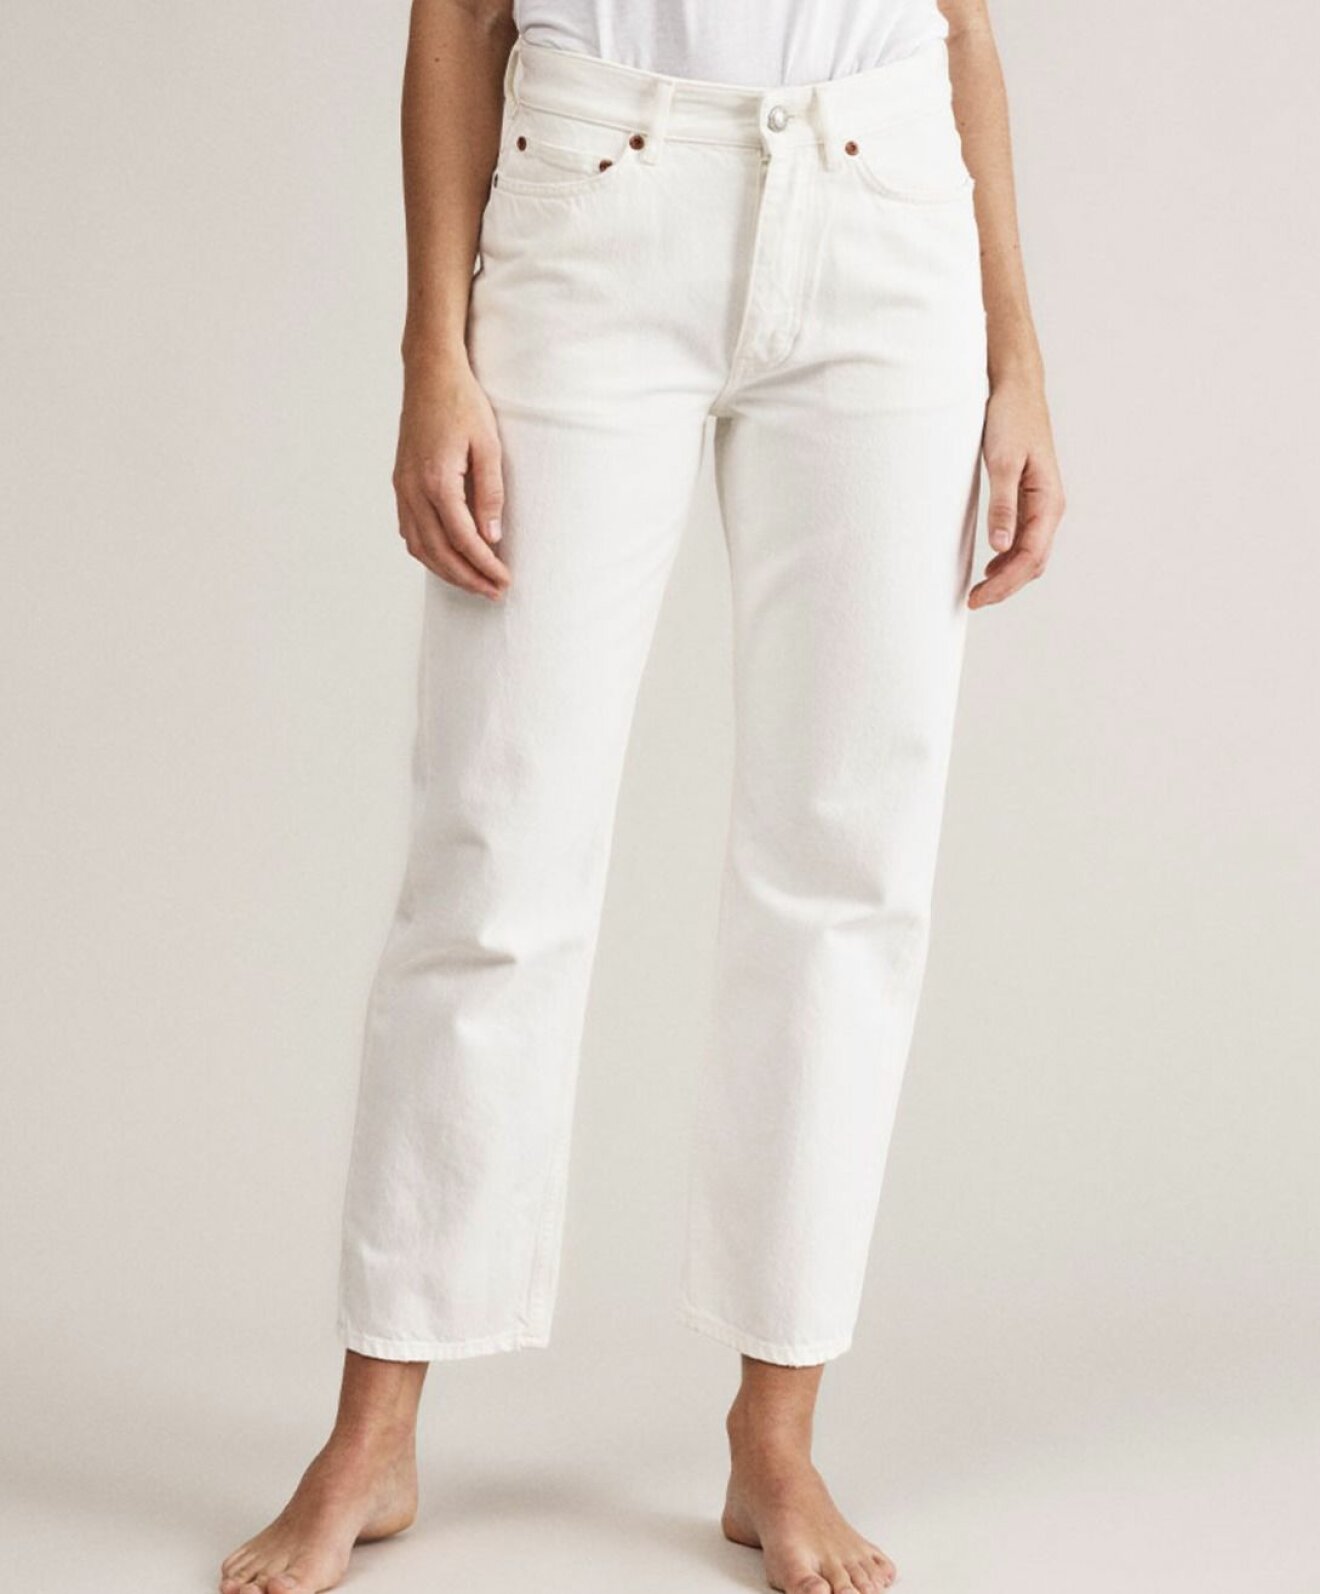 Won Hundred erbjuder dessa vita jeans i "mom jeans" modell där hög midja och något avsmalnande ben står i fokus.